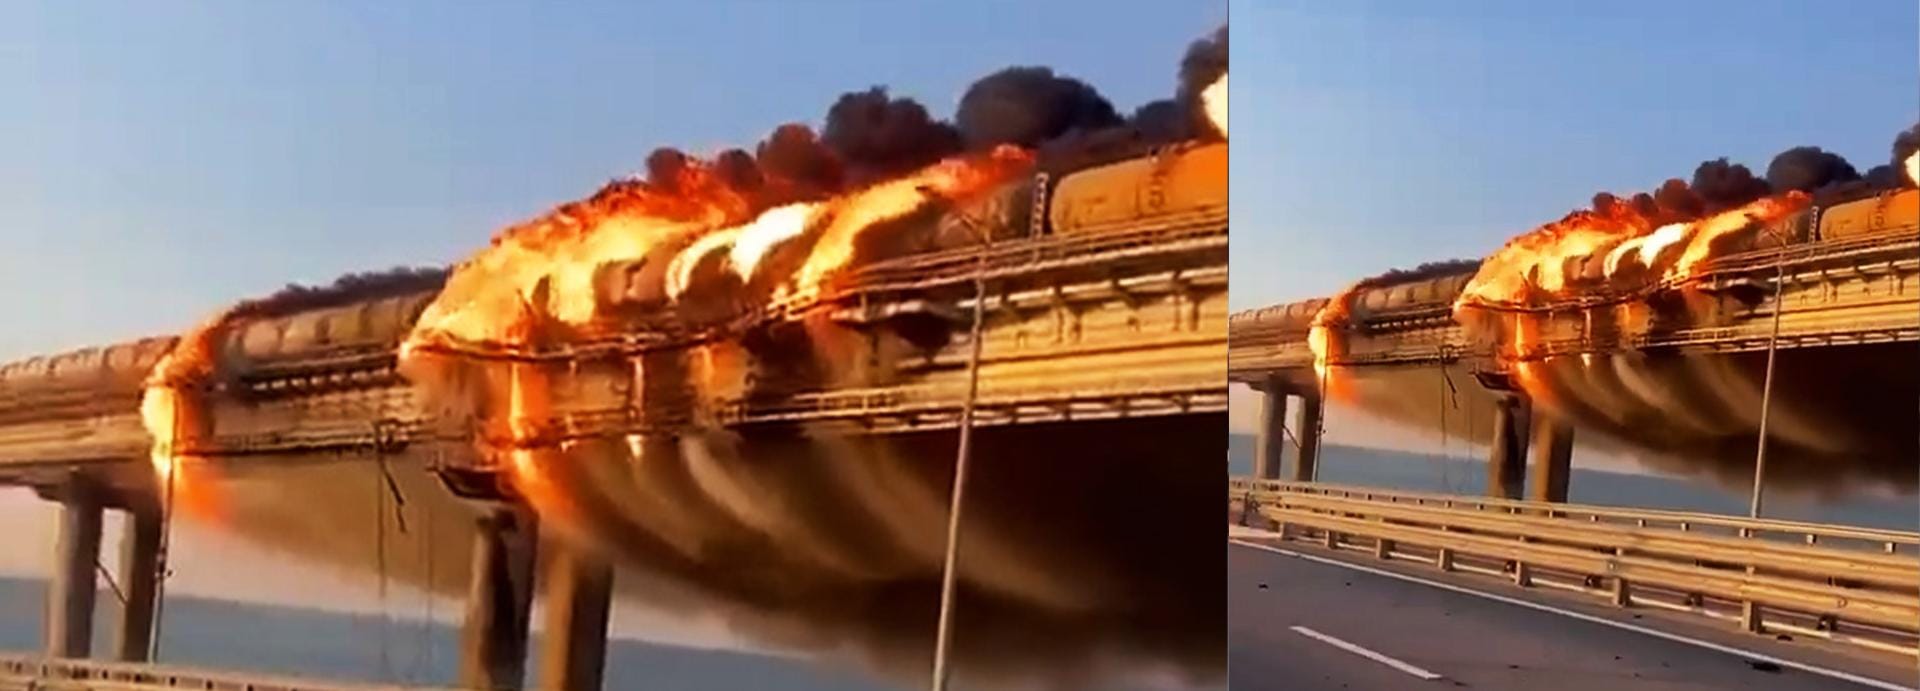 Die Krim-Brücke steht in Flammen.